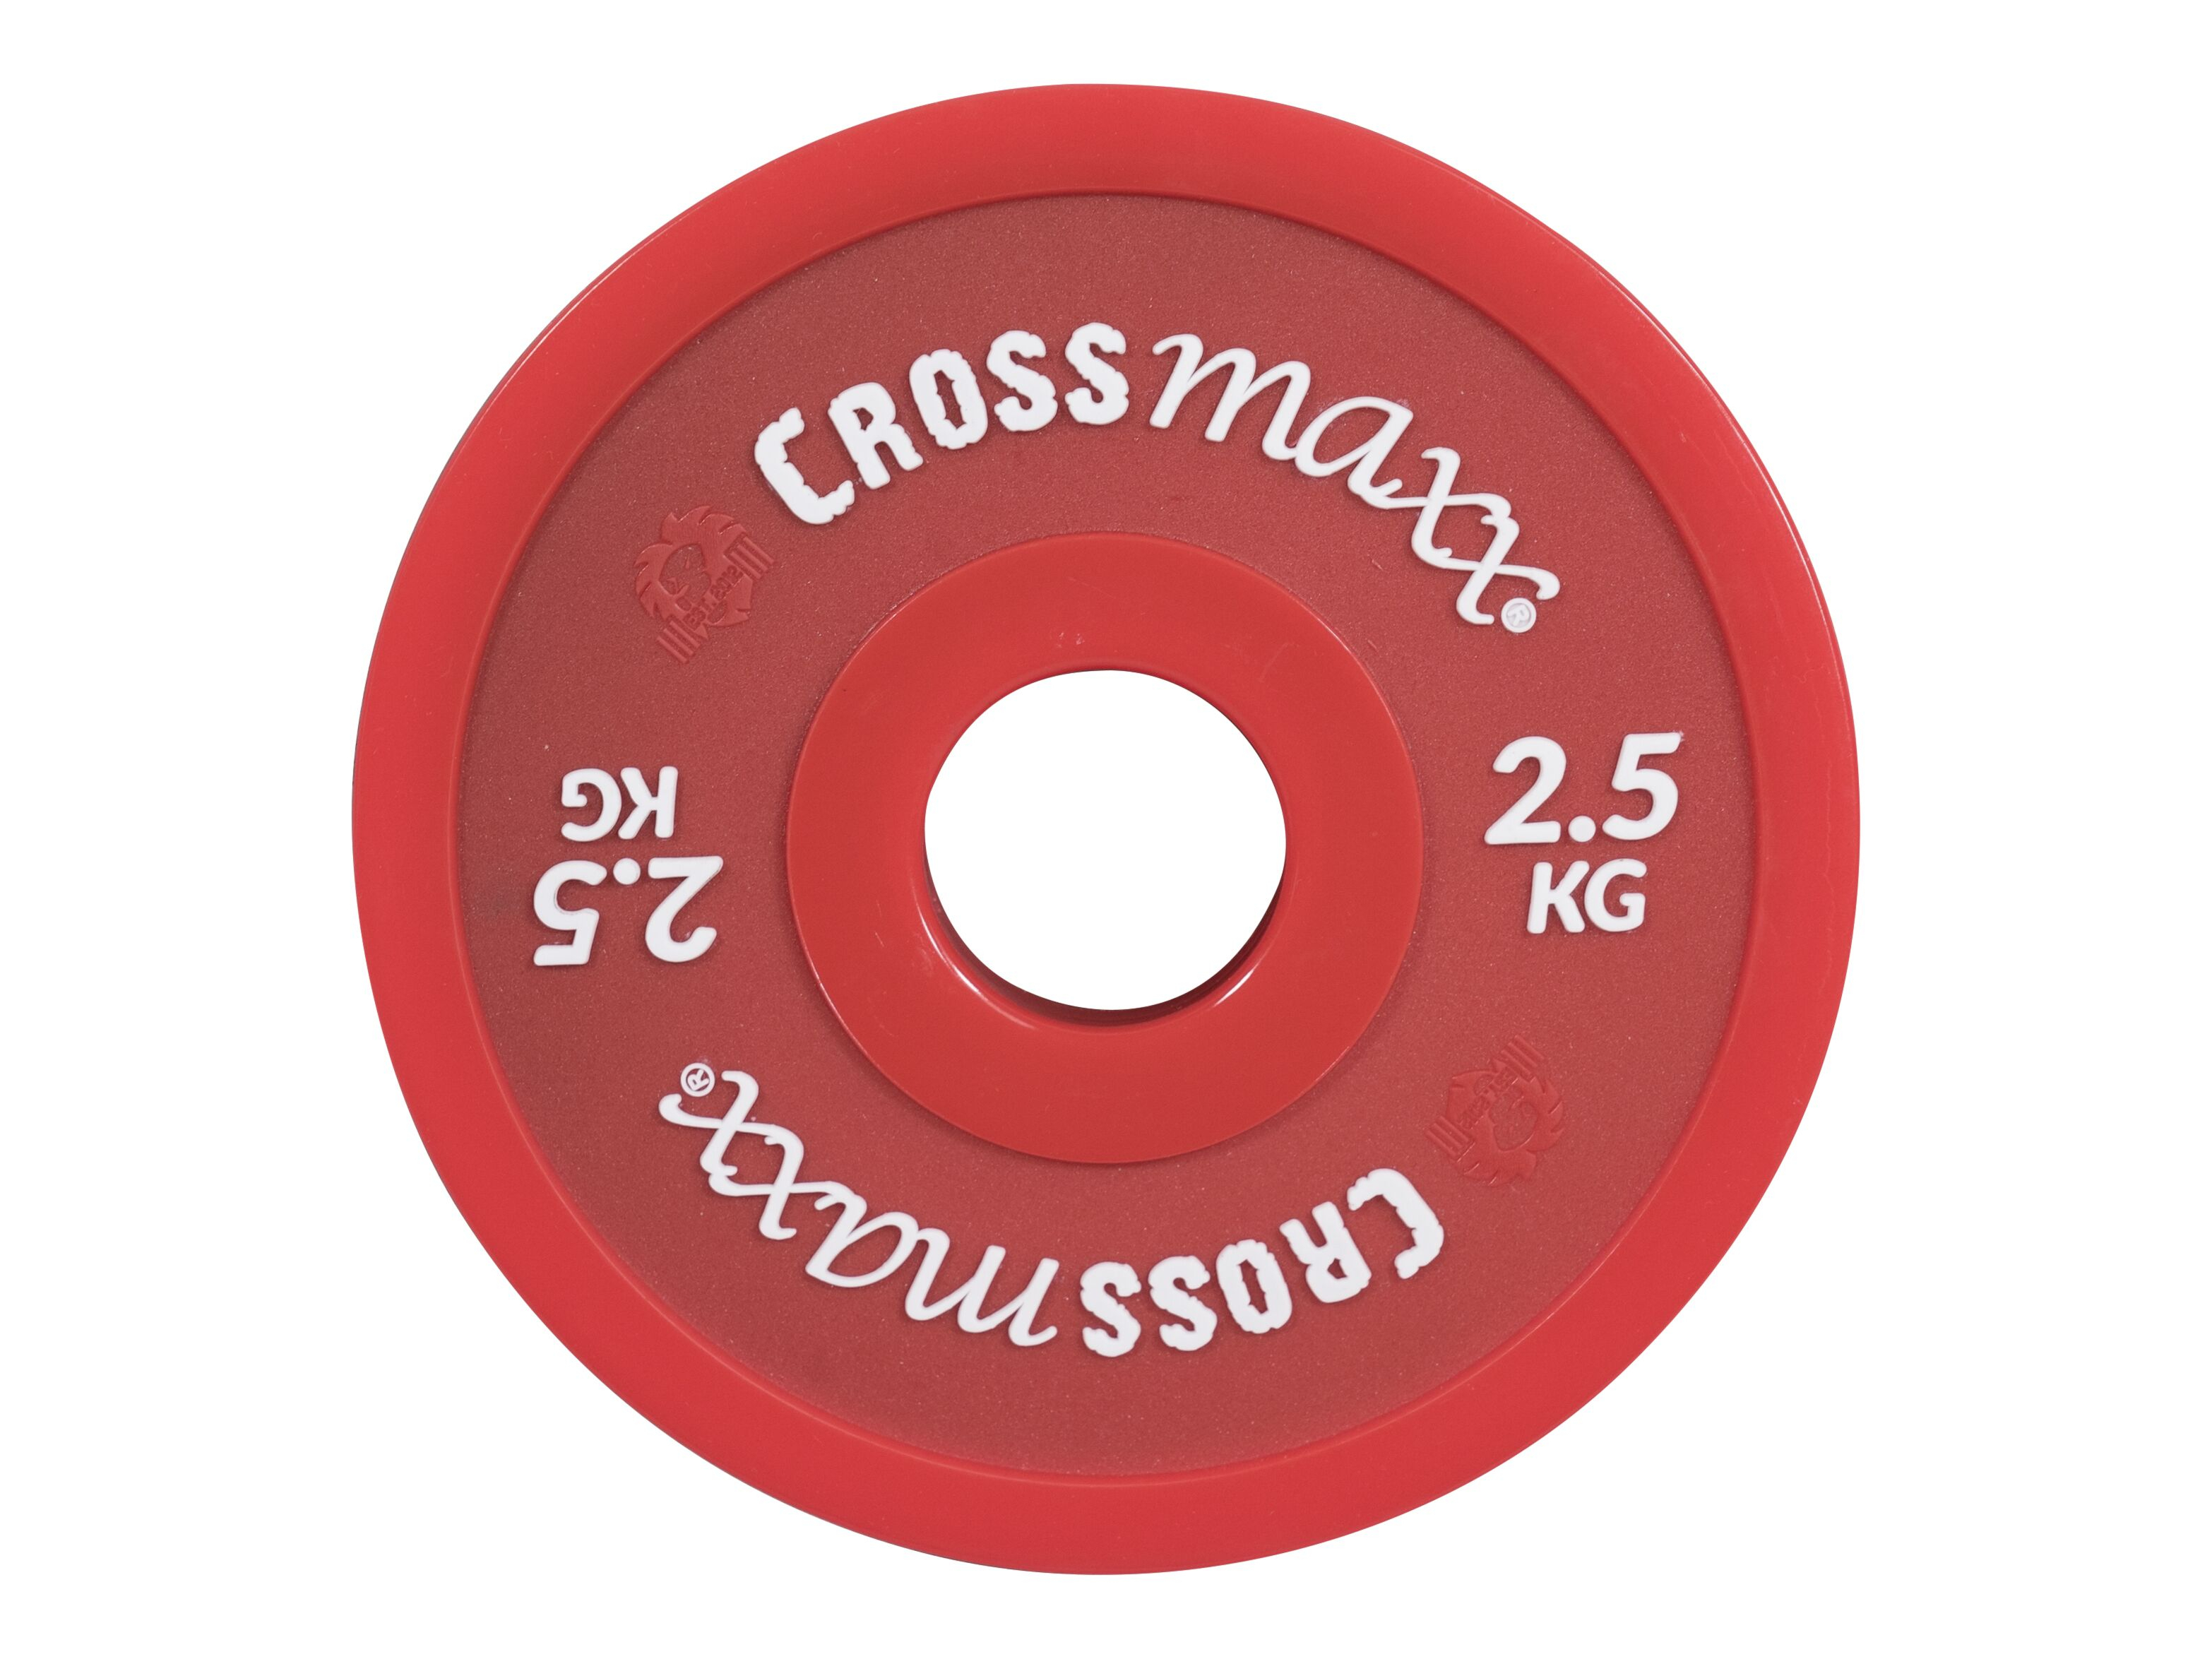 Crossmaxx Crossmaxx Elite fractional plate l 2,5 kg l red